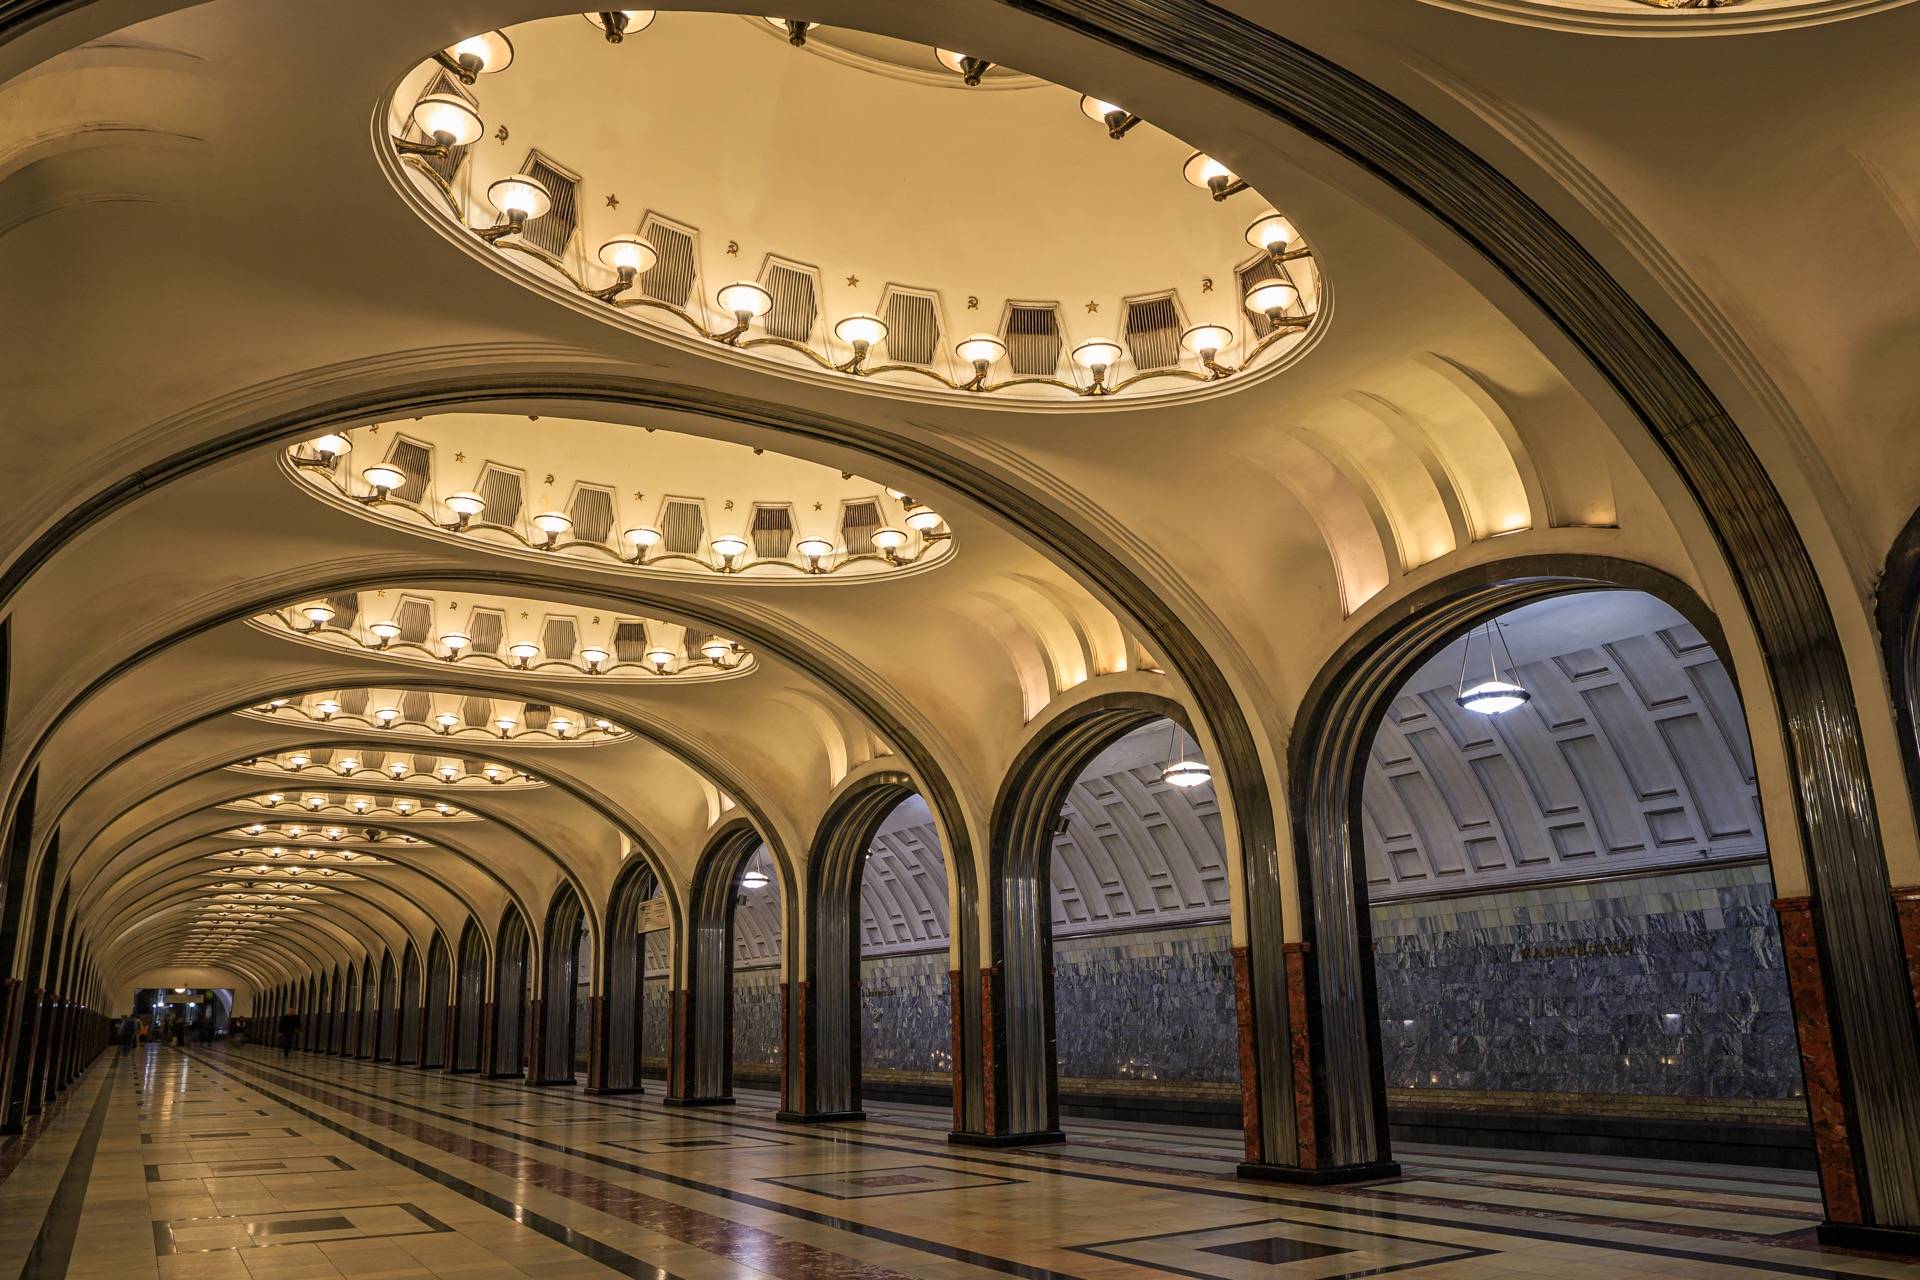 Moscow Metro Photo Tour - Part 2